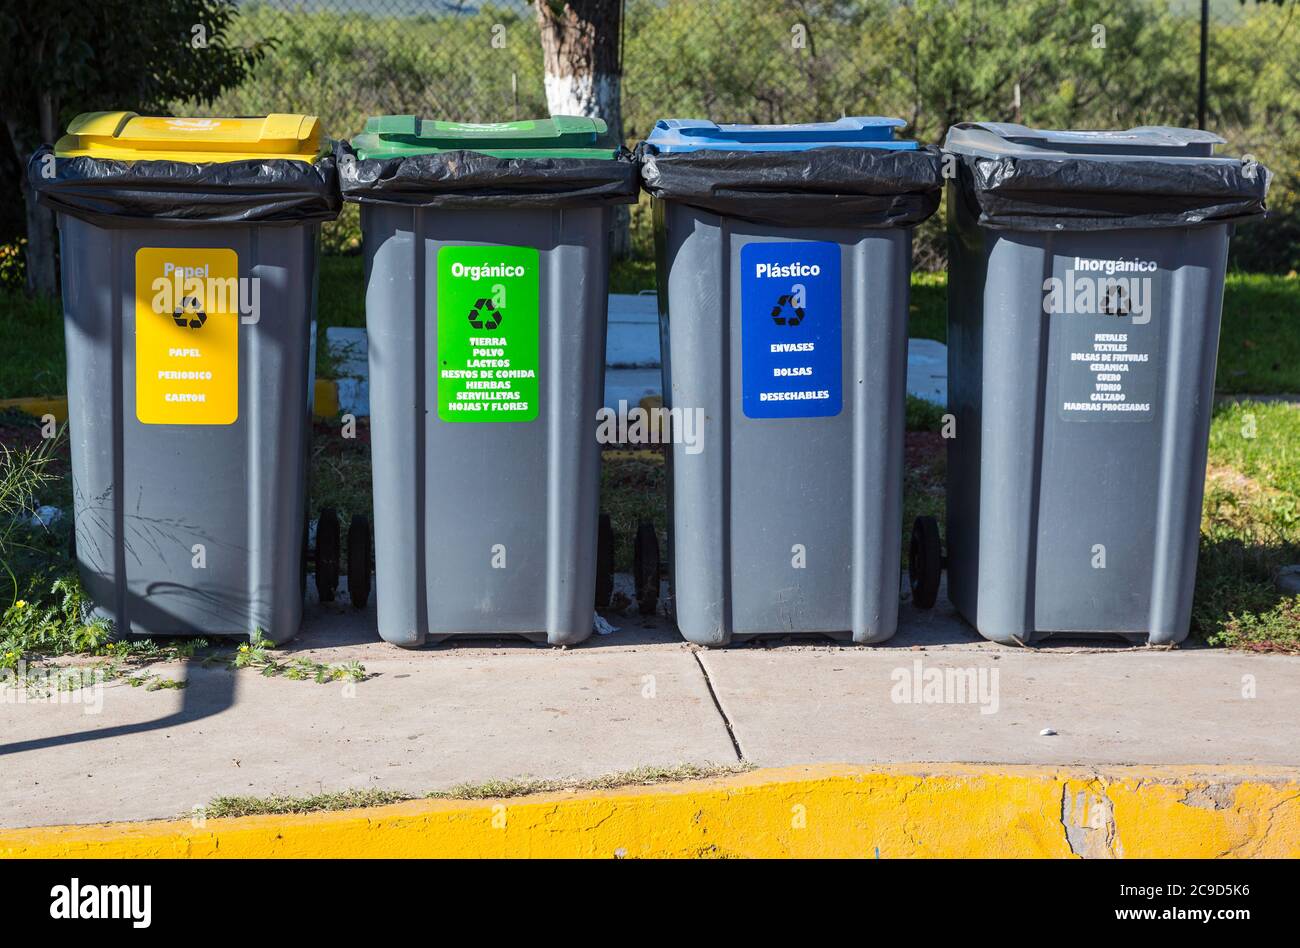 Ciudad Juarez, Chihuahua, Mexique. Poubelles désignées pour recyclage et autres fins d'élimination. Banque D'Images